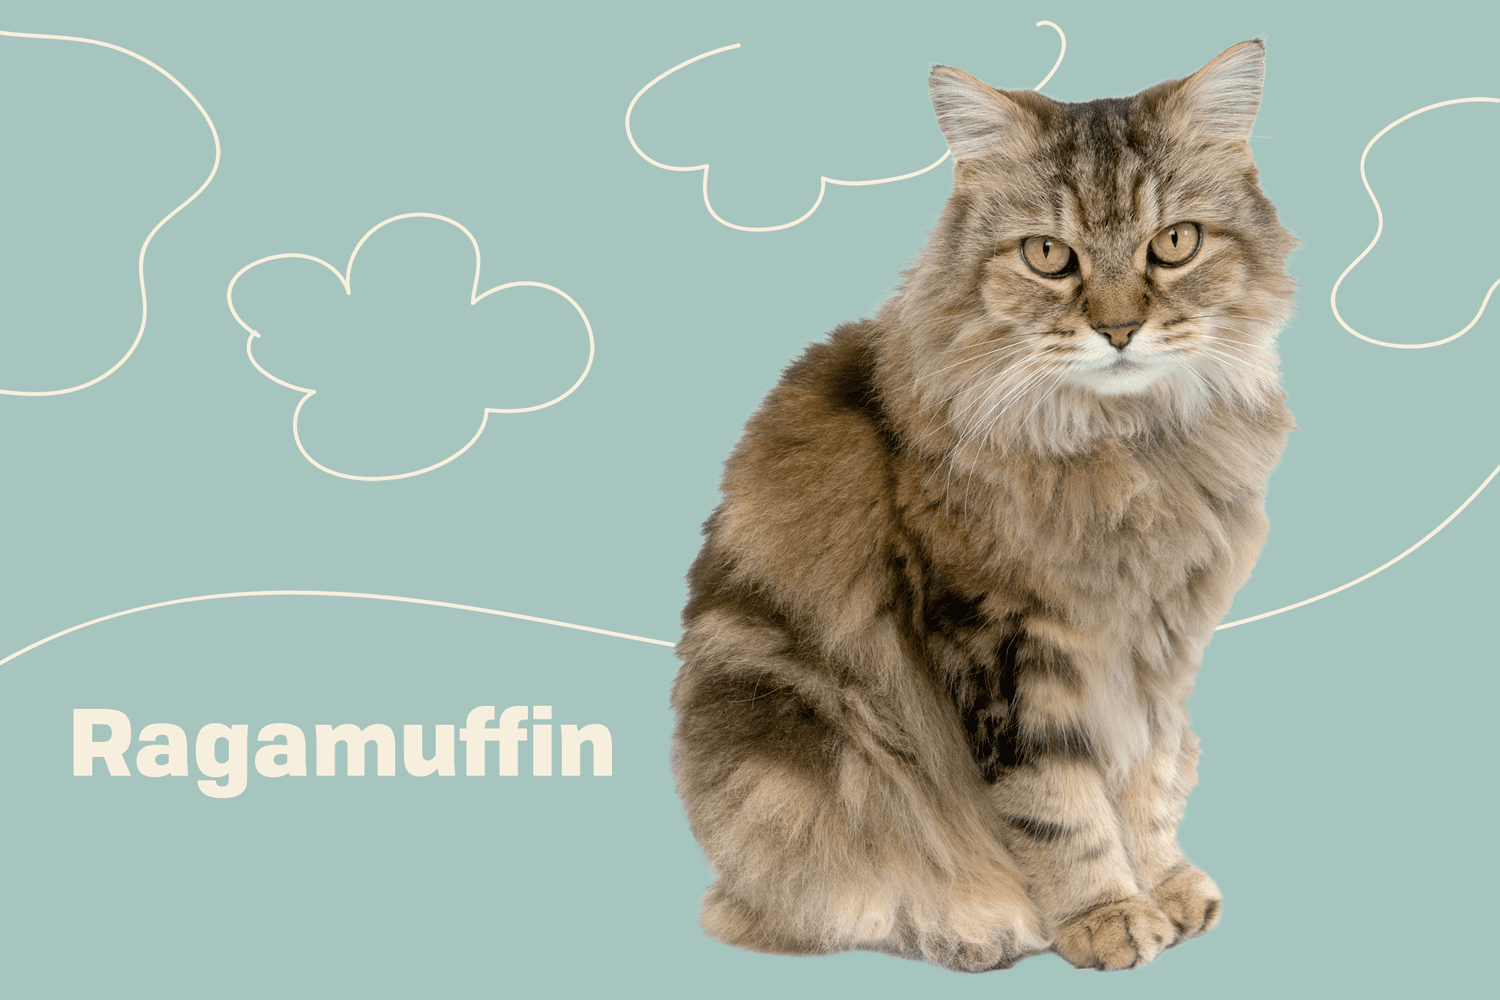 Cat ragamuffin RagaMuffin